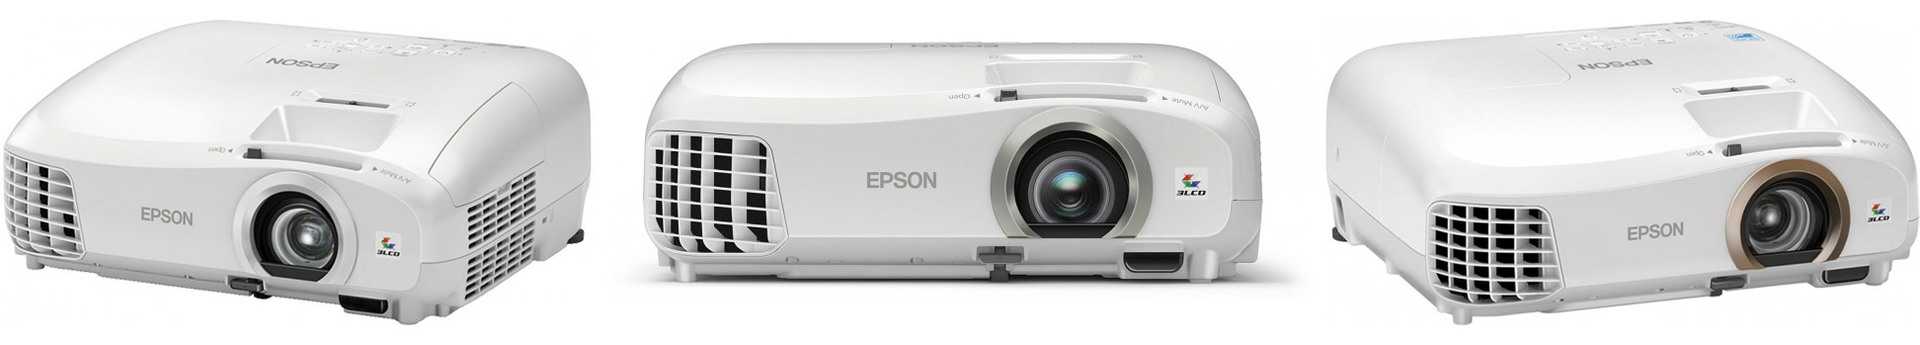 Epson EH-TW5300 - короткий, но максимально информативный обзор. Для большего удобства, добавлены характеристики, отзывы и видео.